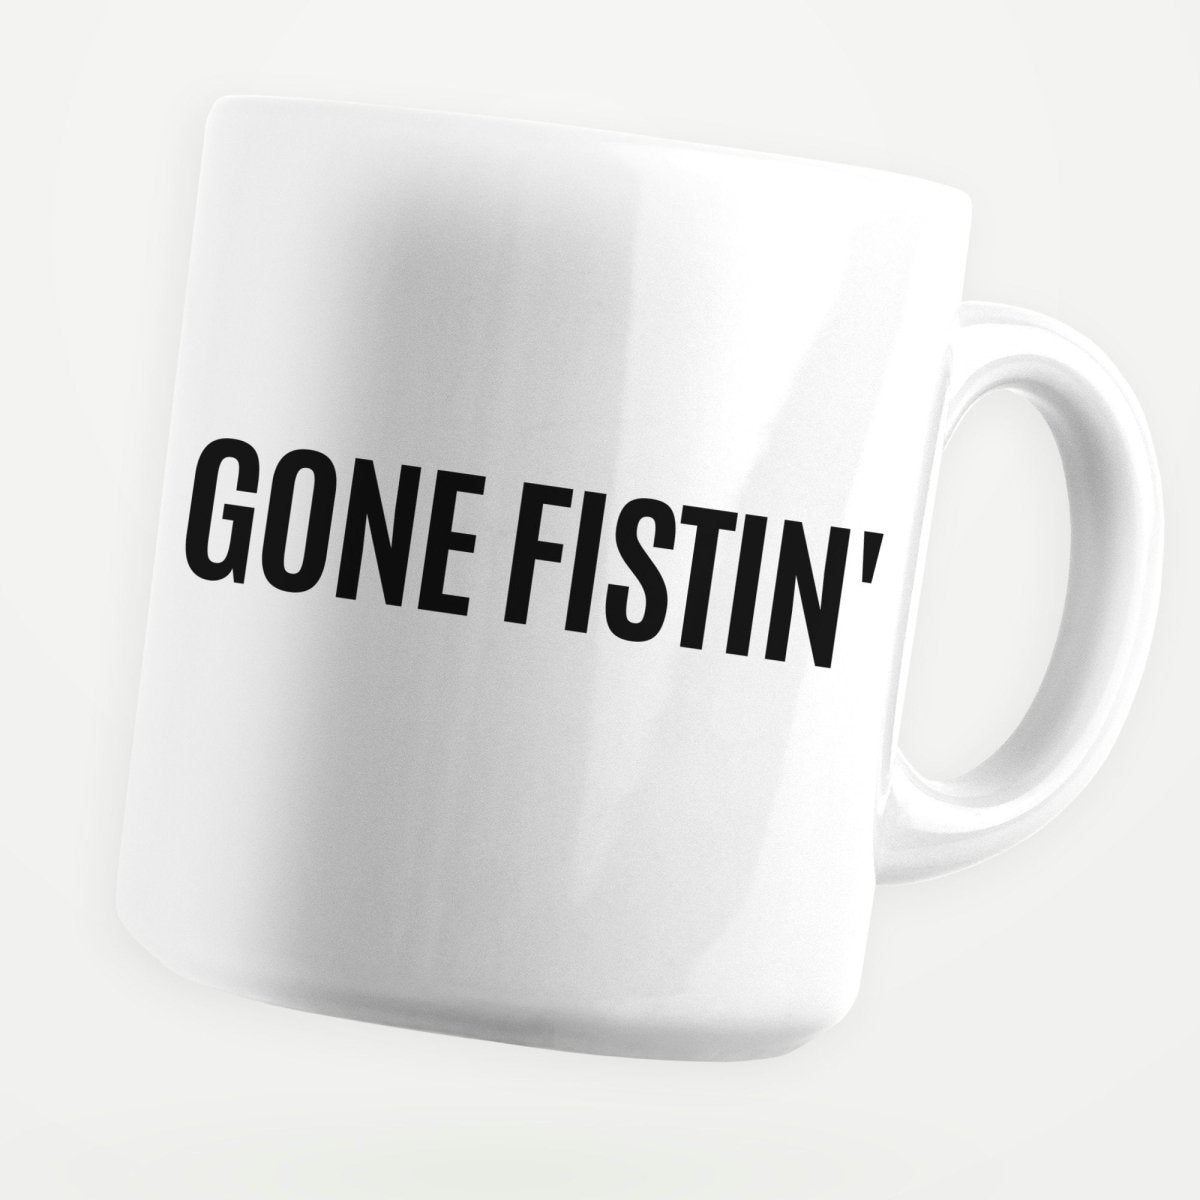 Gone Fistin' 11oz Coffee Mug - stickerbullGone Fistin' 11oz Coffee MugMugsstickerbullstickerbullMug_GoneFistin'Gone Fistin' 11oz Coffee Mug